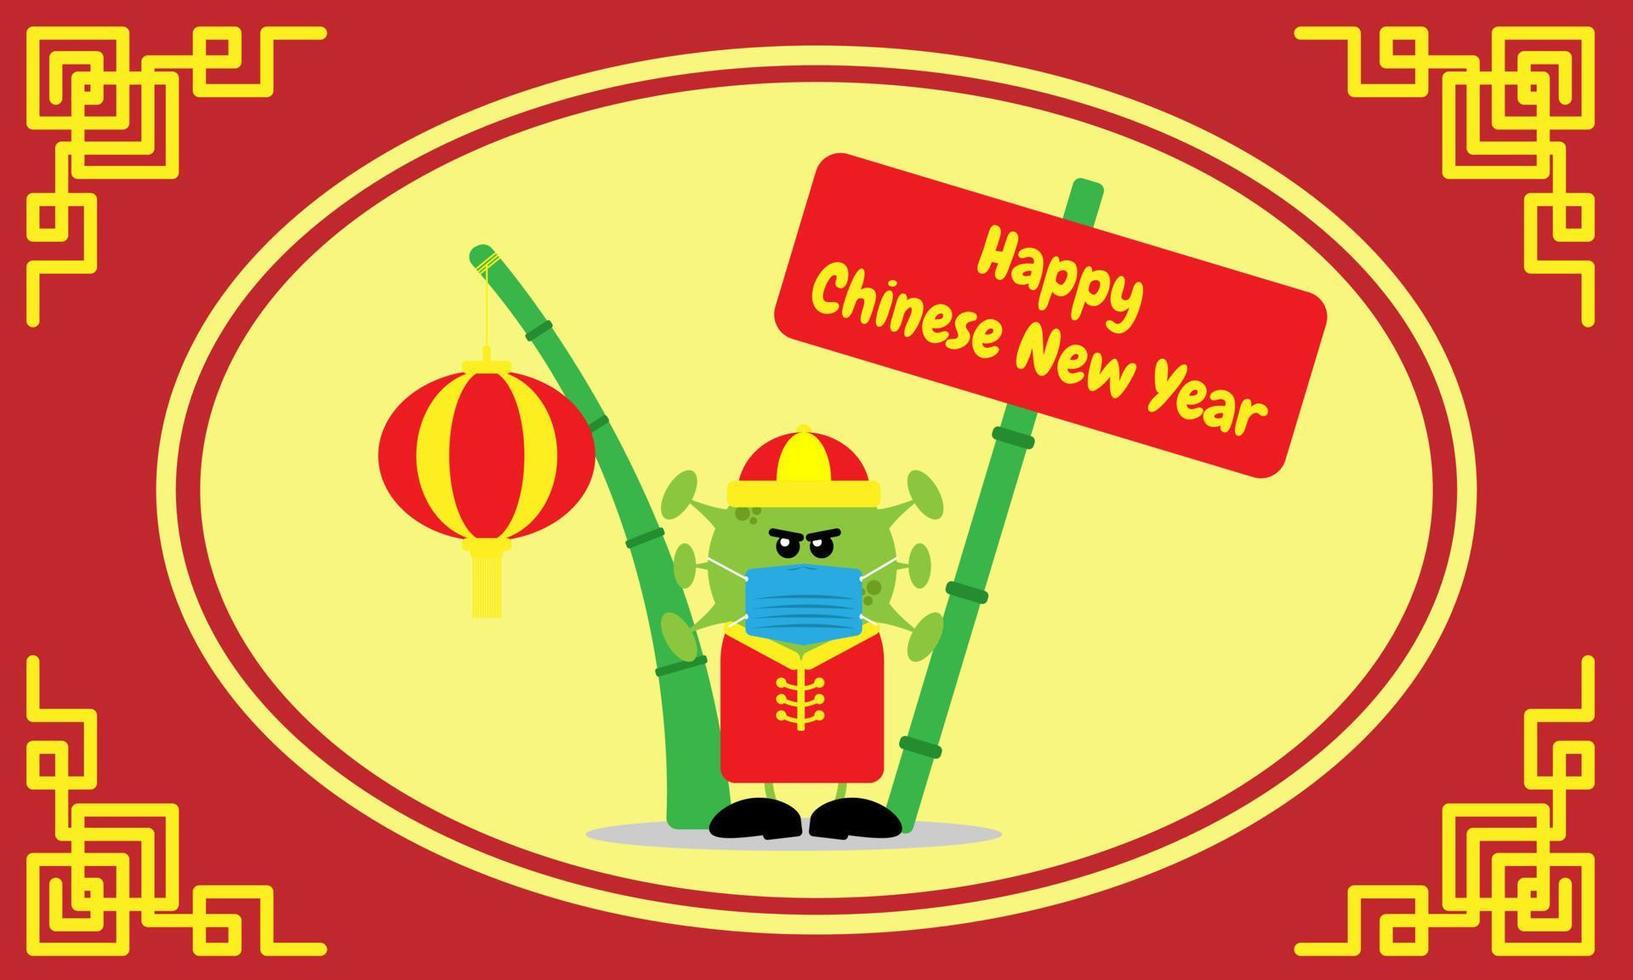 El virus omicron enmascarado les desea un feliz año nuevo chino. adecuado para tarjetas de felicitación, pancartas, portadas, etc. vector